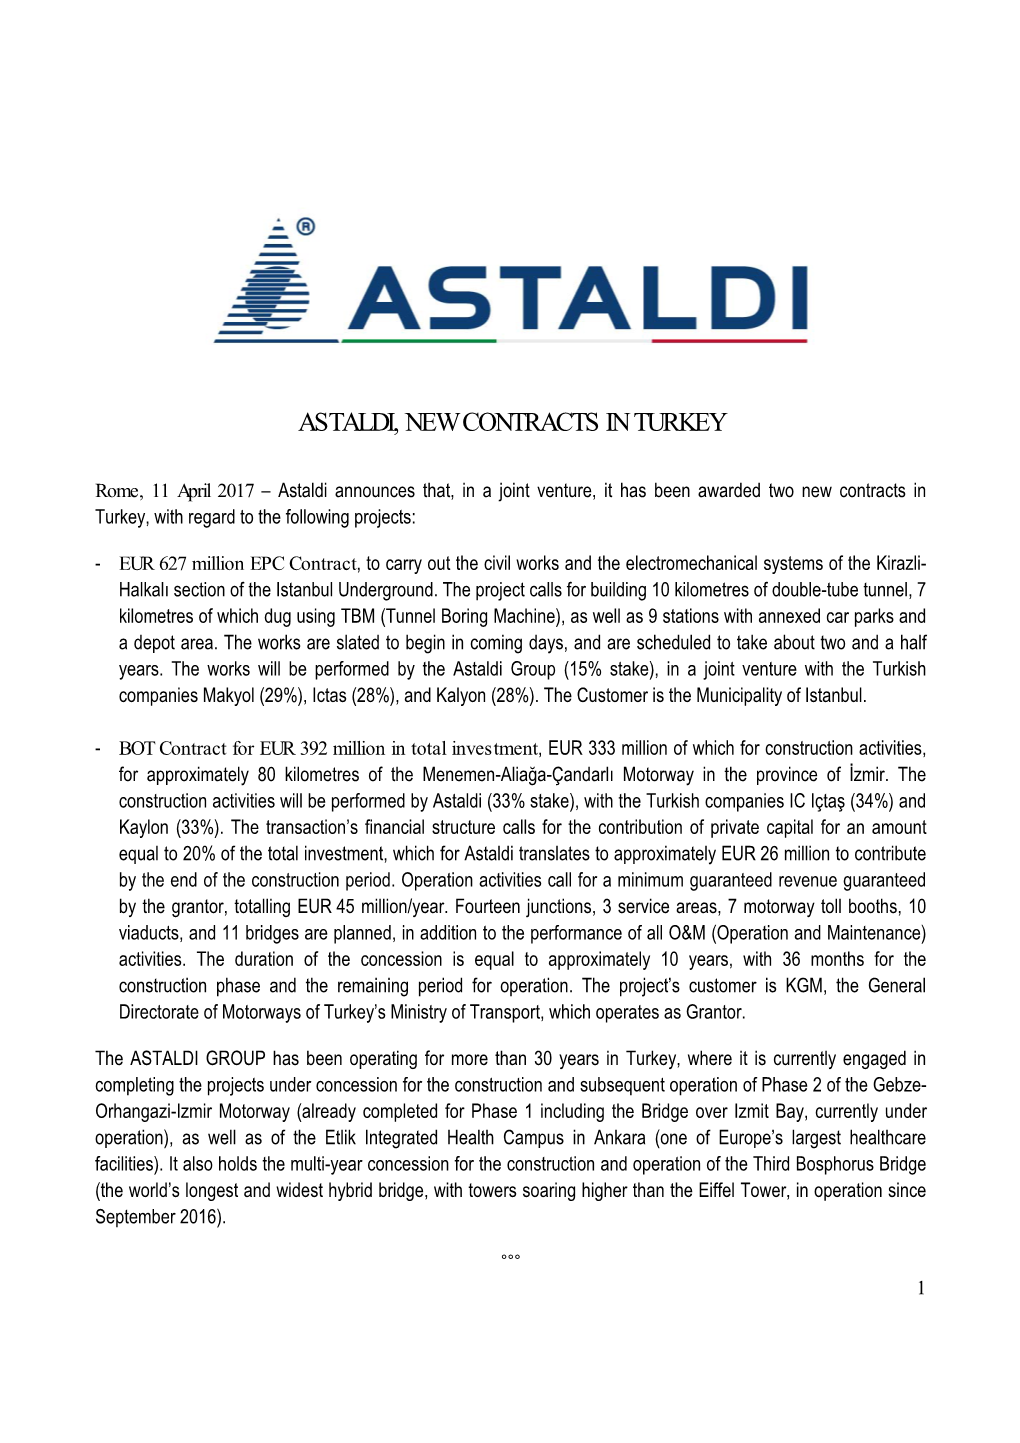 Astaldi, New Contracts in Turkey